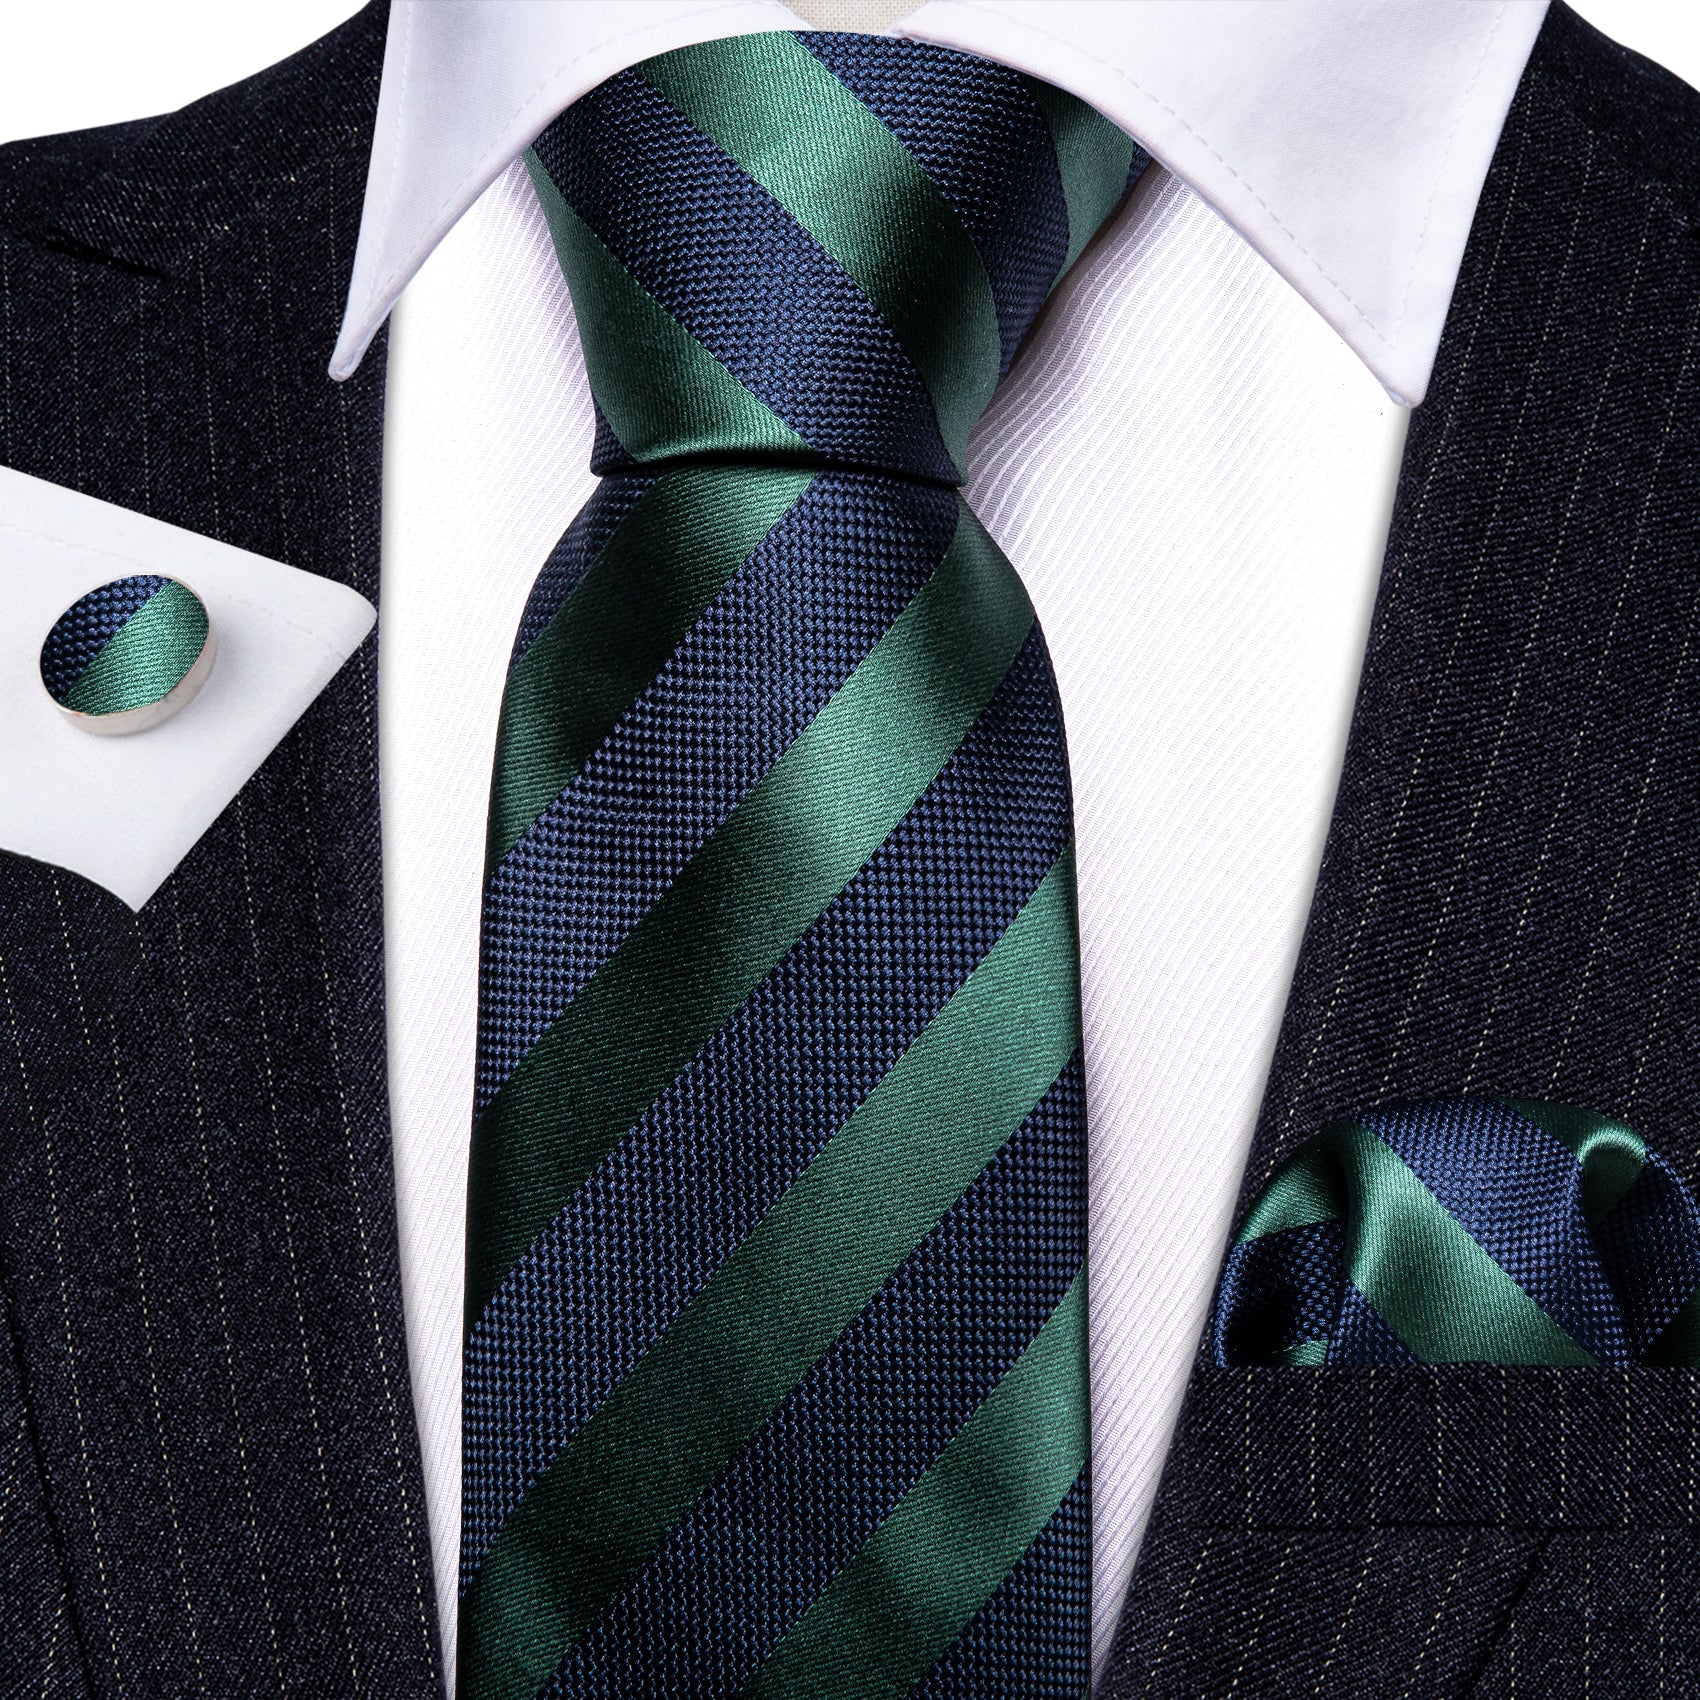  Navy Blue Green Striped Tie Handkerchief Cufflinks Set